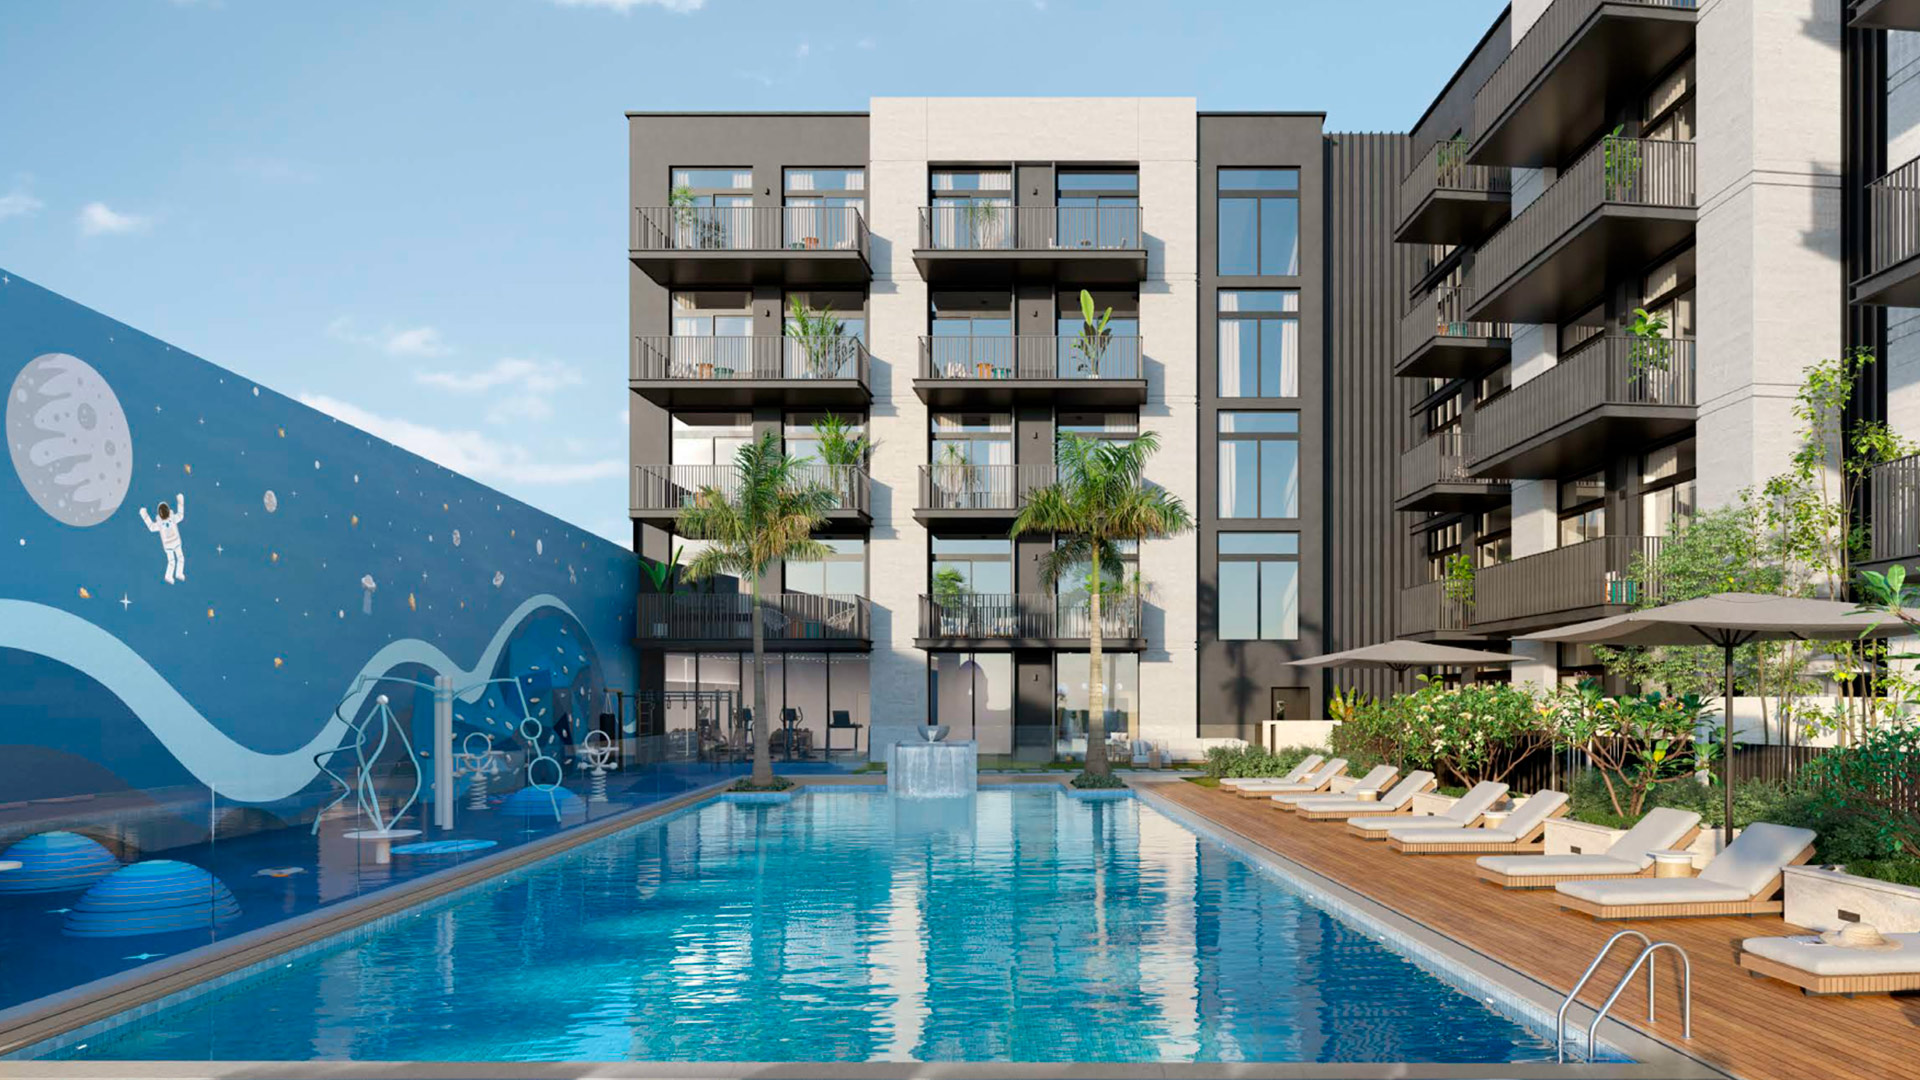 میں Jumeirah Village Triangle، Dubai، متحدہ عرب اماراتBELMONT RESIDENCE کی طرف سے Ellington Properties  - 7